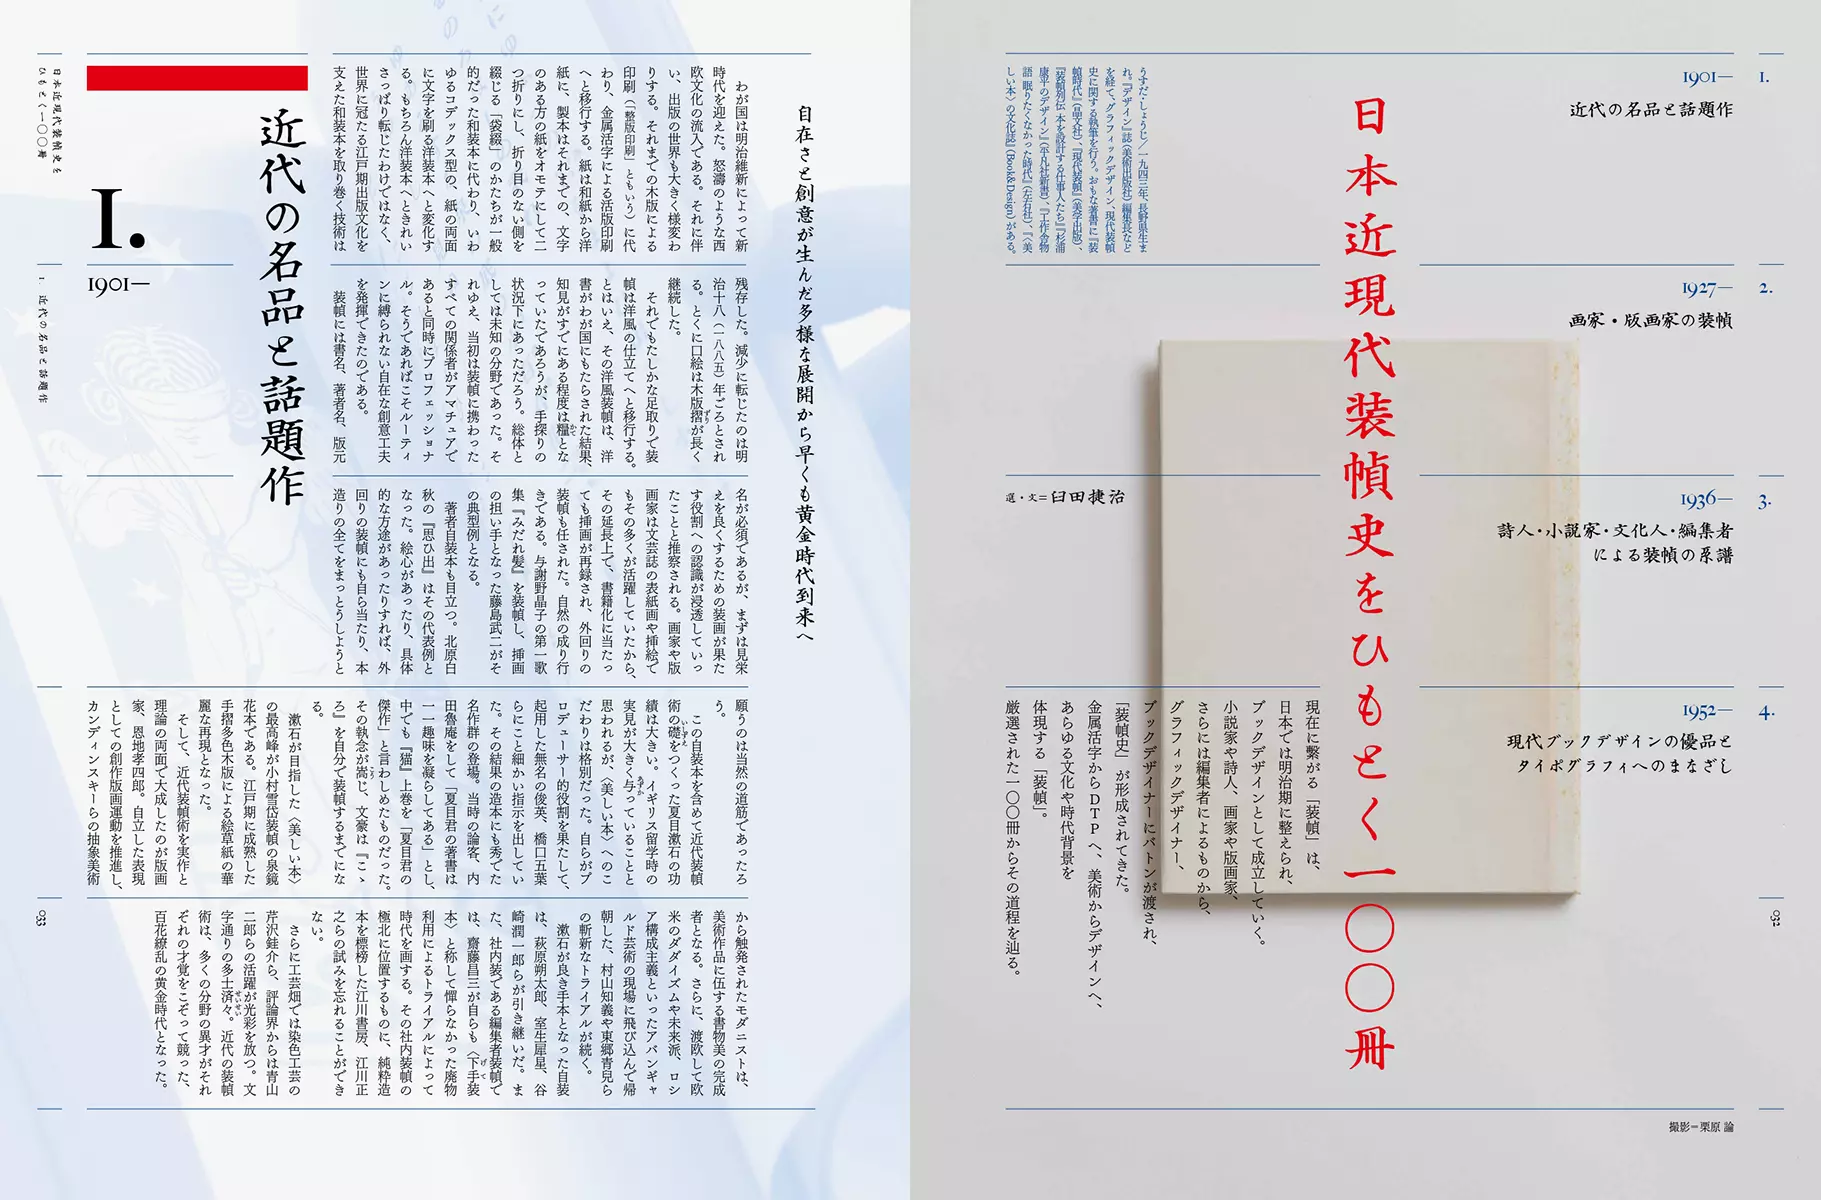 日本のブックデザインの一五〇年　装丁とその時代 |学習と教育を支援する通販会社-YTT Net